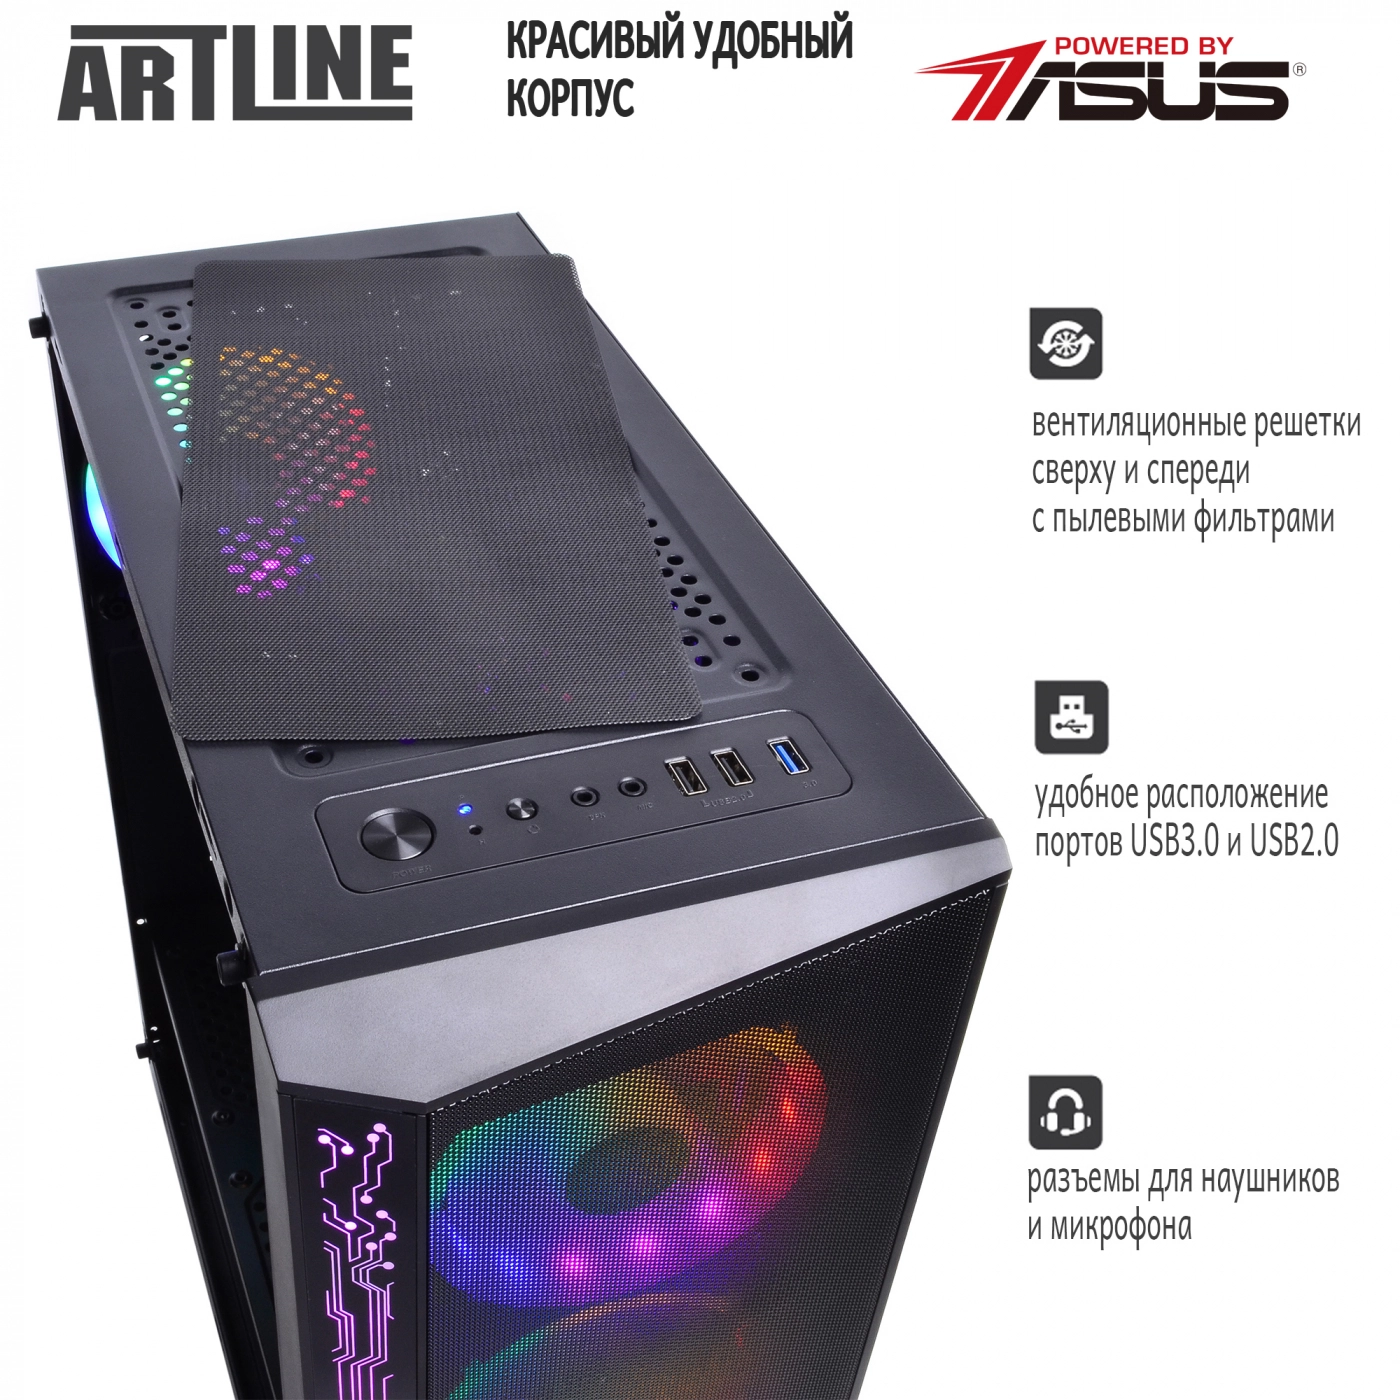 Купить Компьютер ARTLINE Gaming X43v11 - фото 3